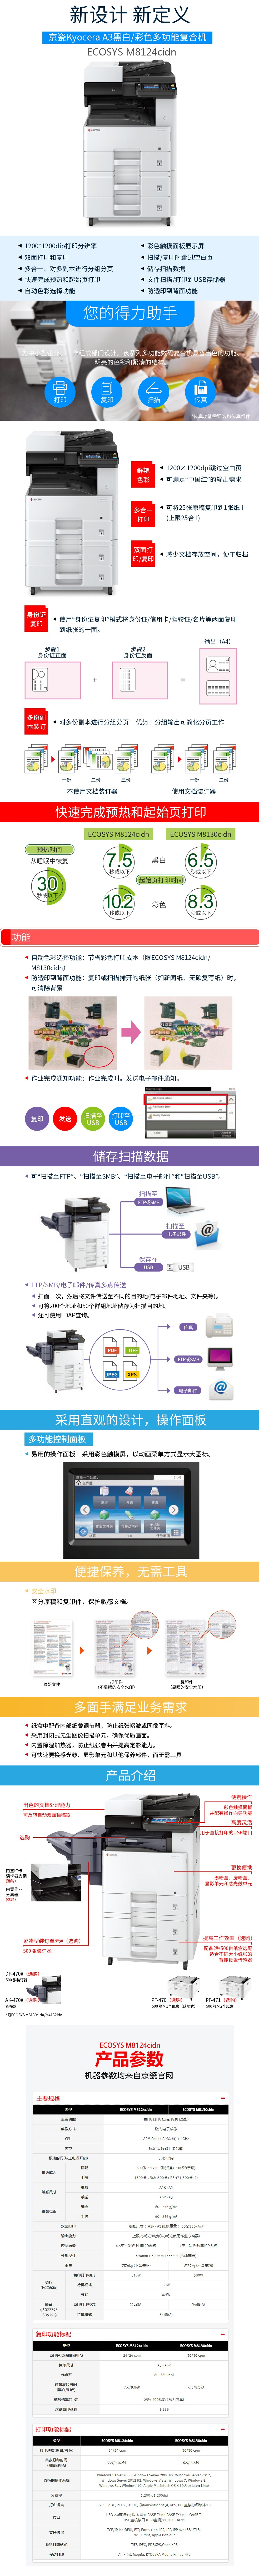 京瓷（KYOCERA）M 8124 cidn彩色激光A3办公复合机无线网络打印机复印机多功能一体机 .png